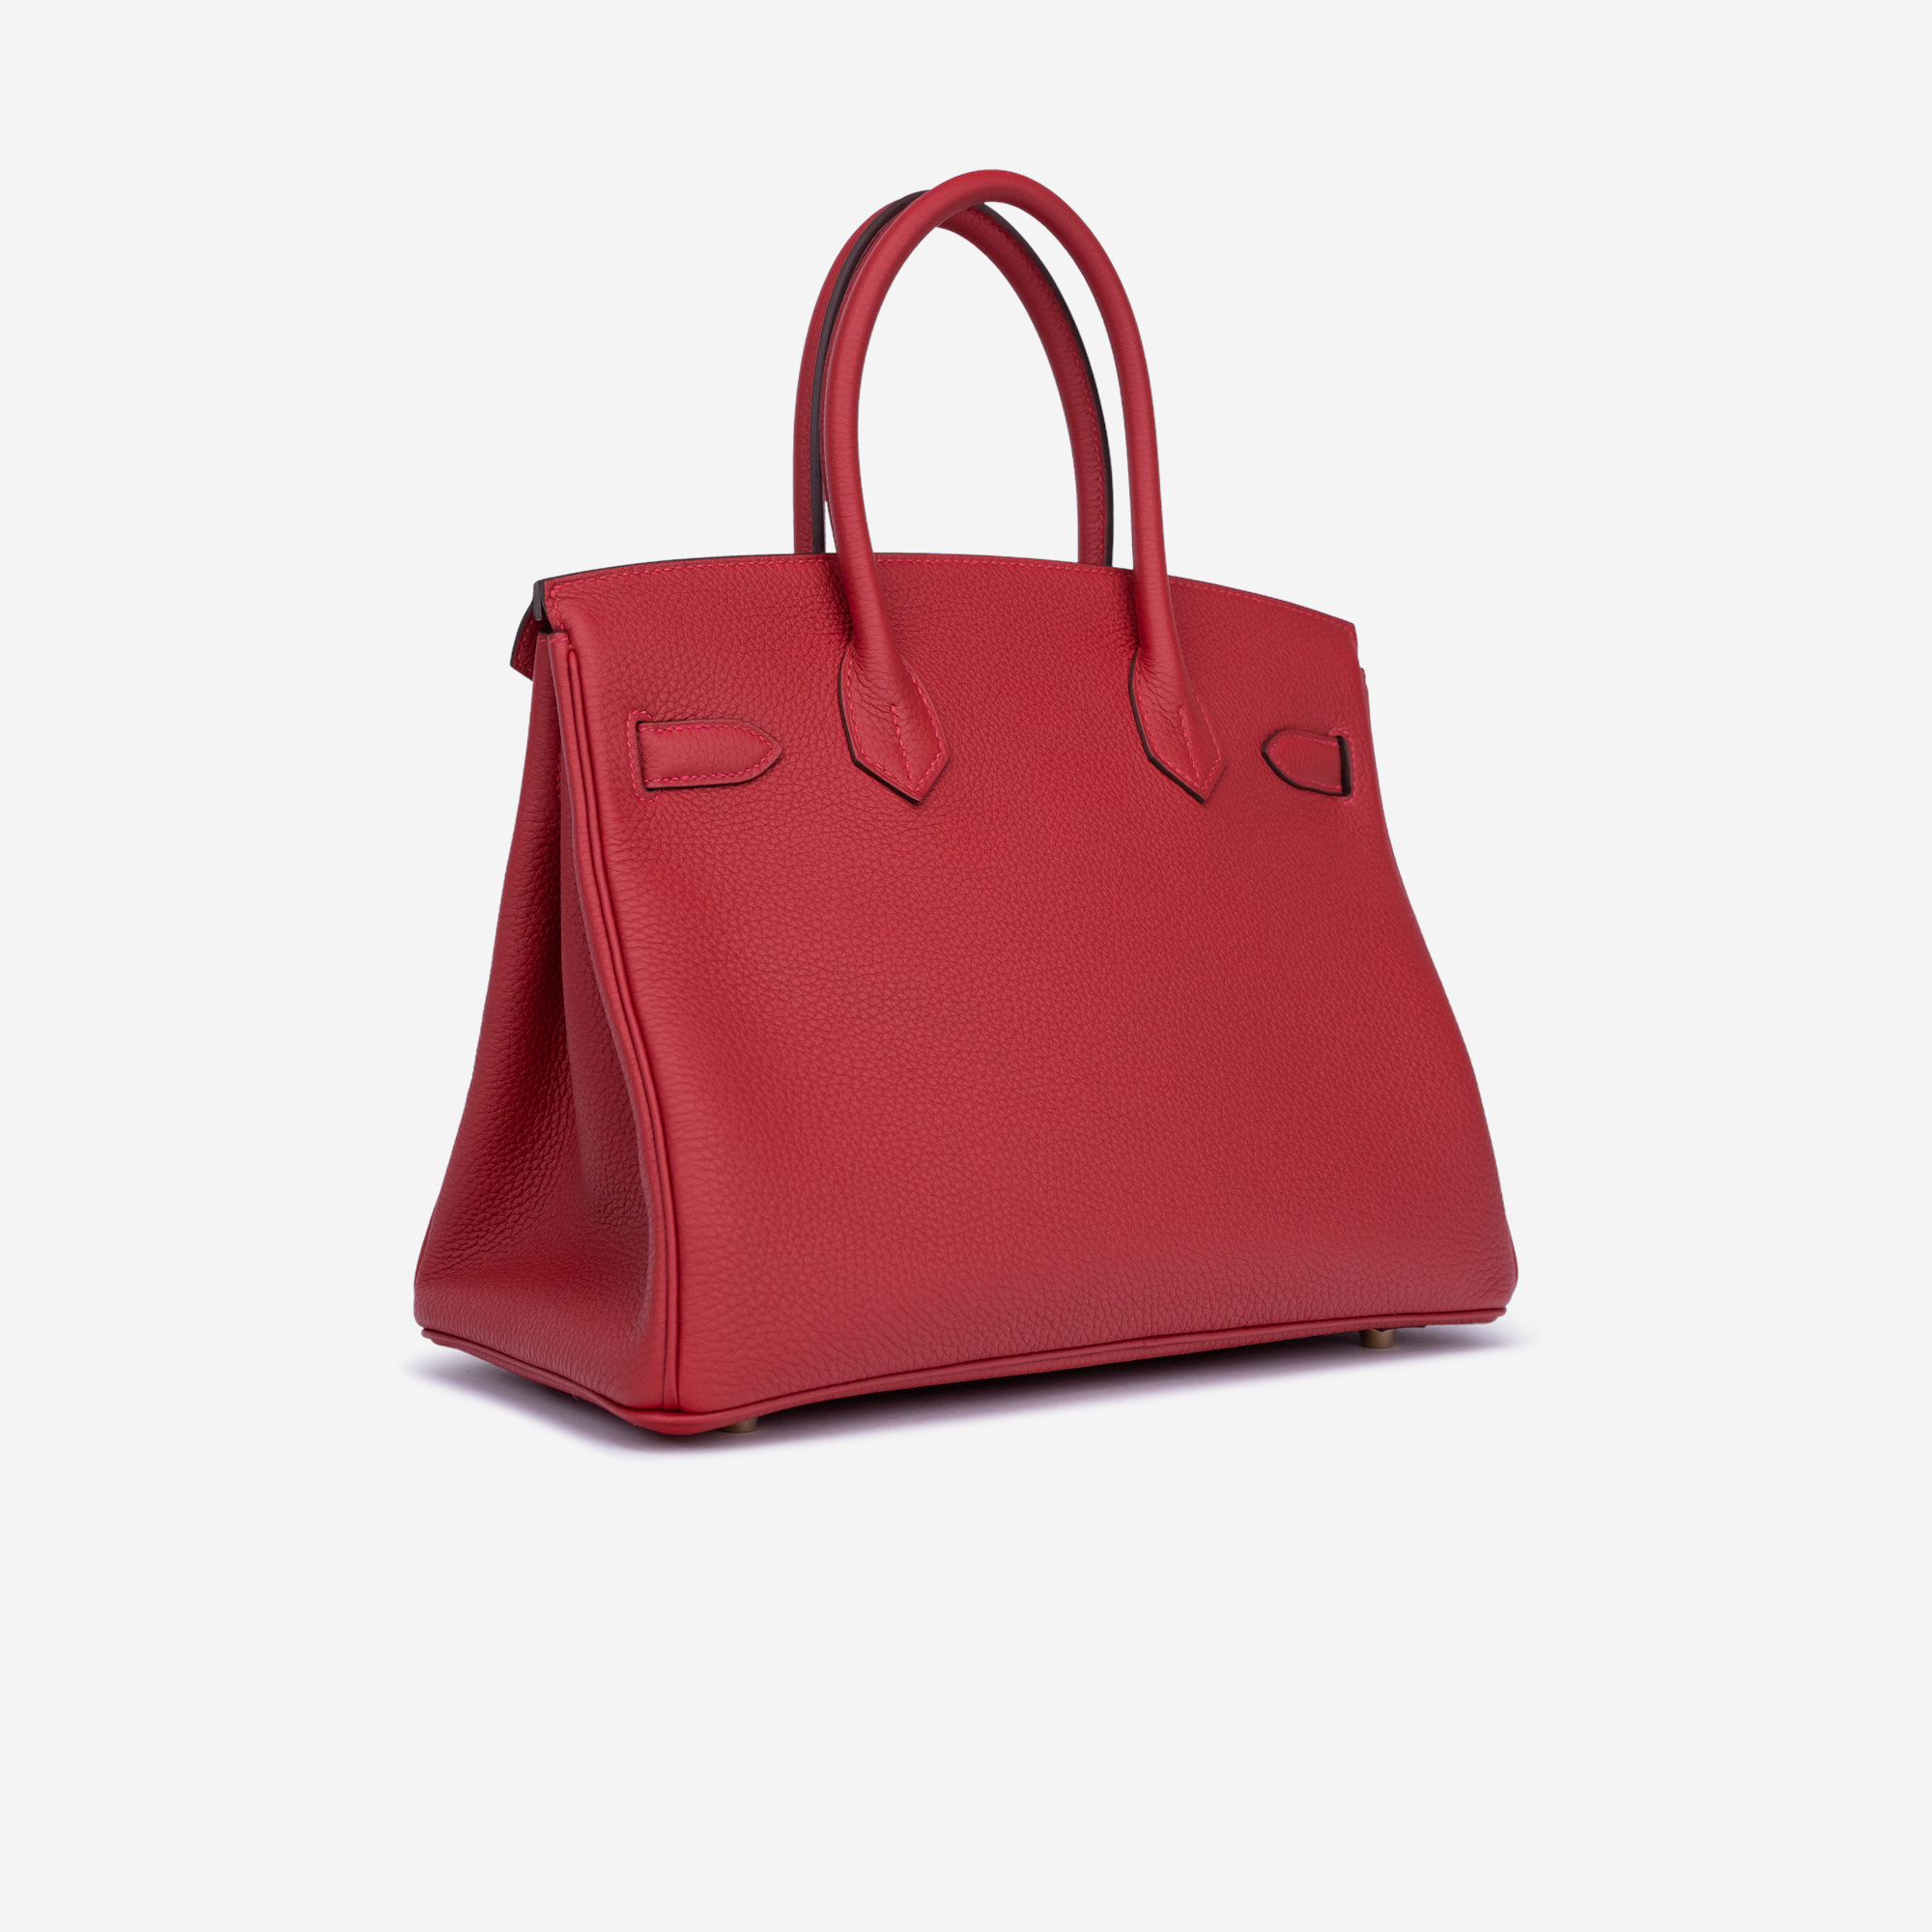 Hermes Birkin 30/35 Bag in Original Togo Leather Bag Red  Hermes bag birkin,  Unique handbags, Leather handbag purse